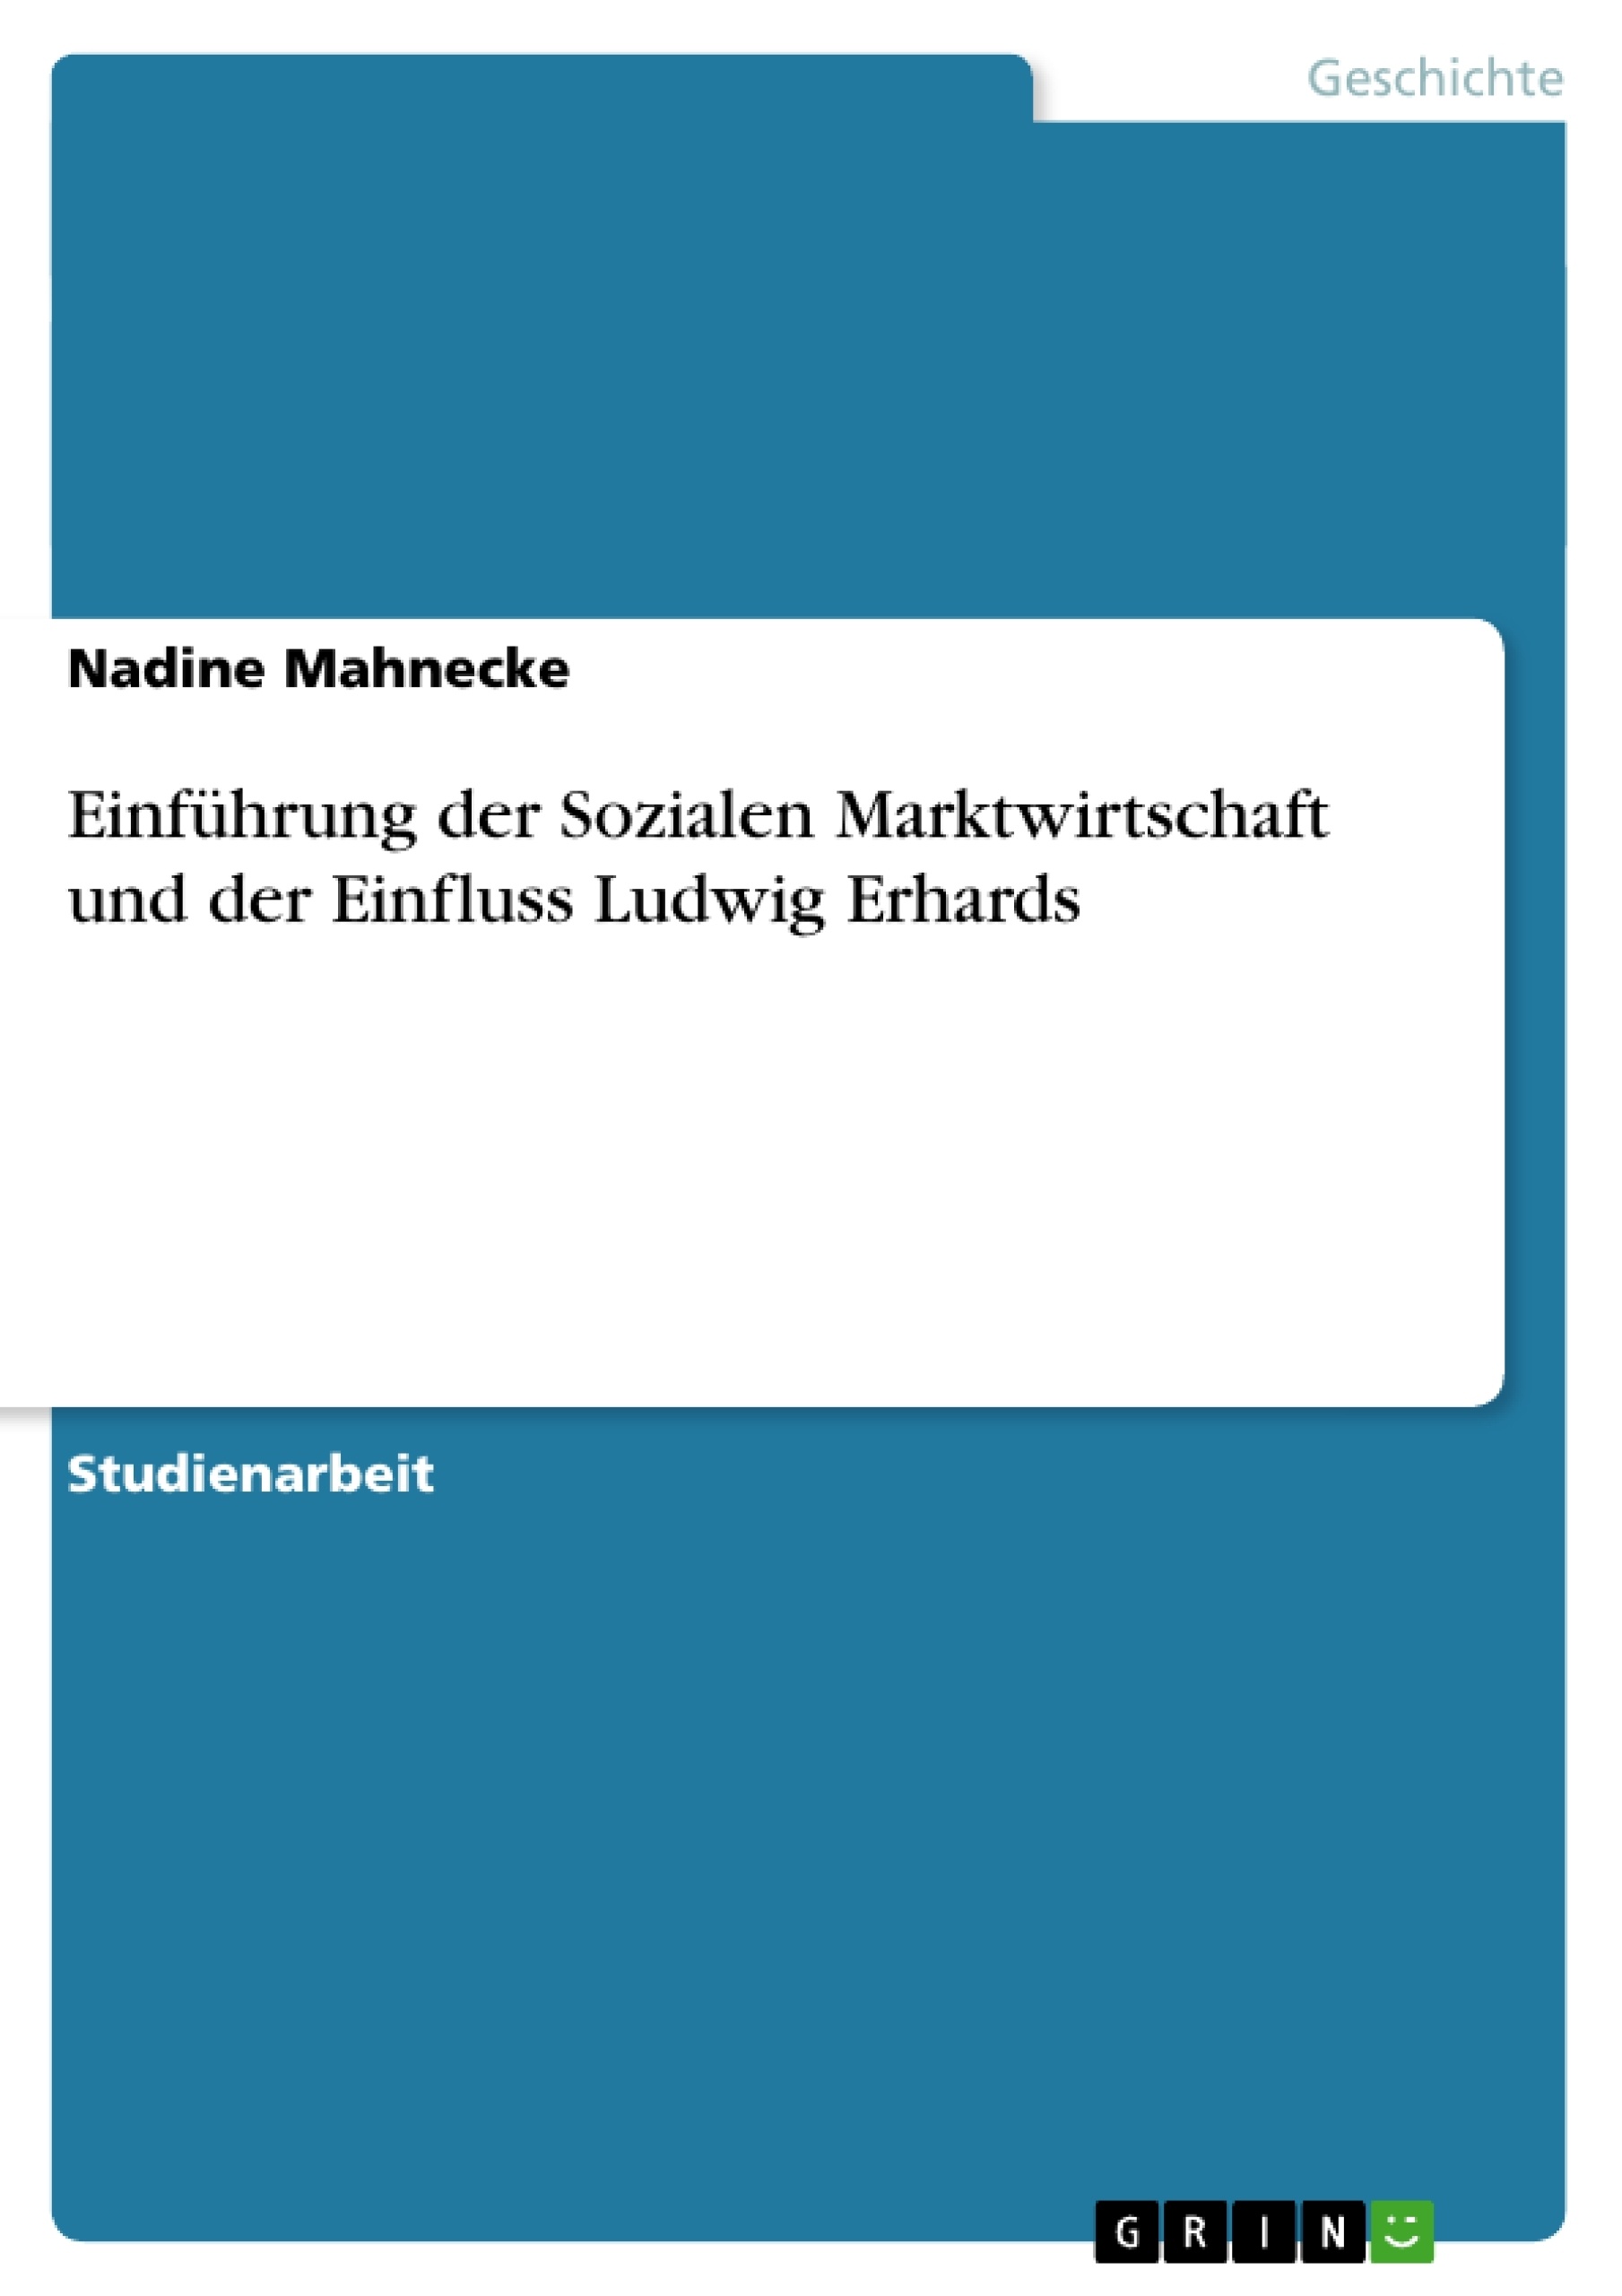 Título: Einführung der Sozialen Marktwirtschaft und der Einfluss Ludwig Erhards